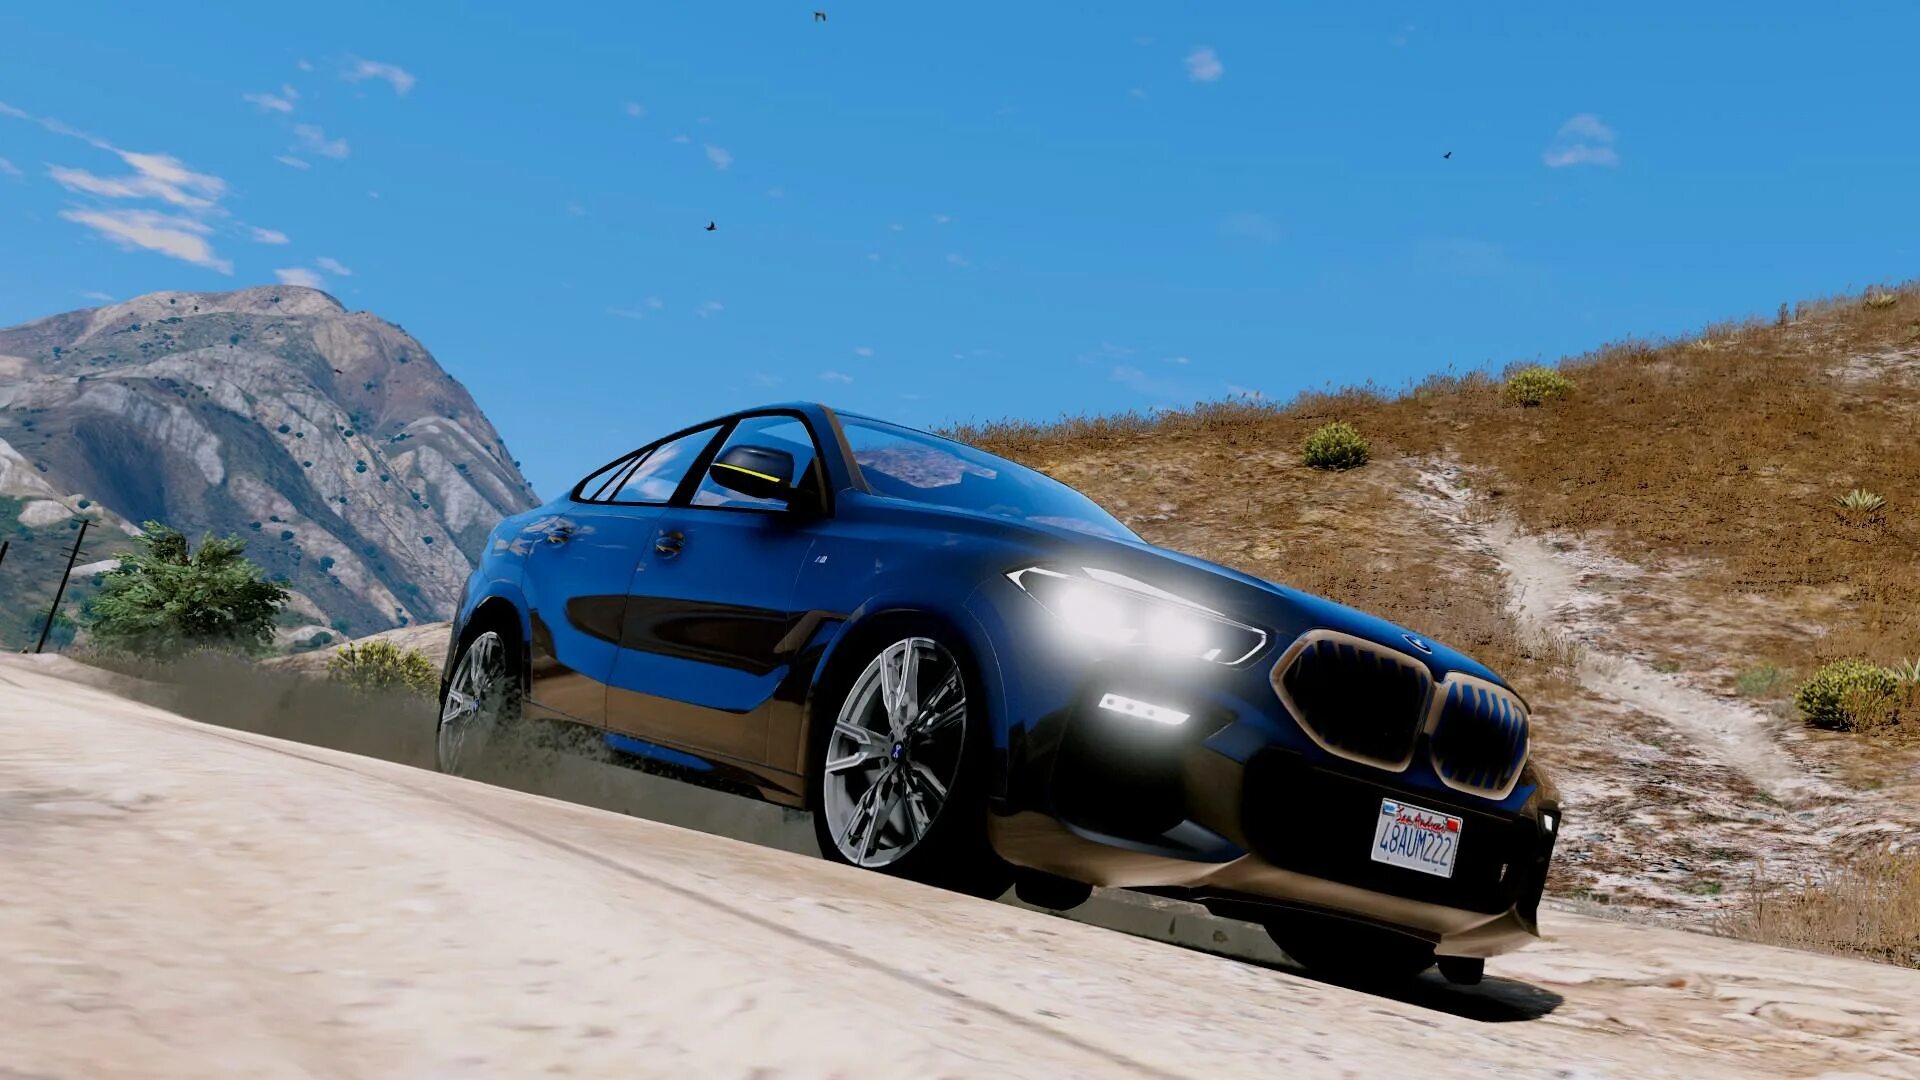 BMW x6 m50i. BMW x6m GTA 5. BMW x6m 2020 GTA 5. BMW x6 m50i GTA 5.